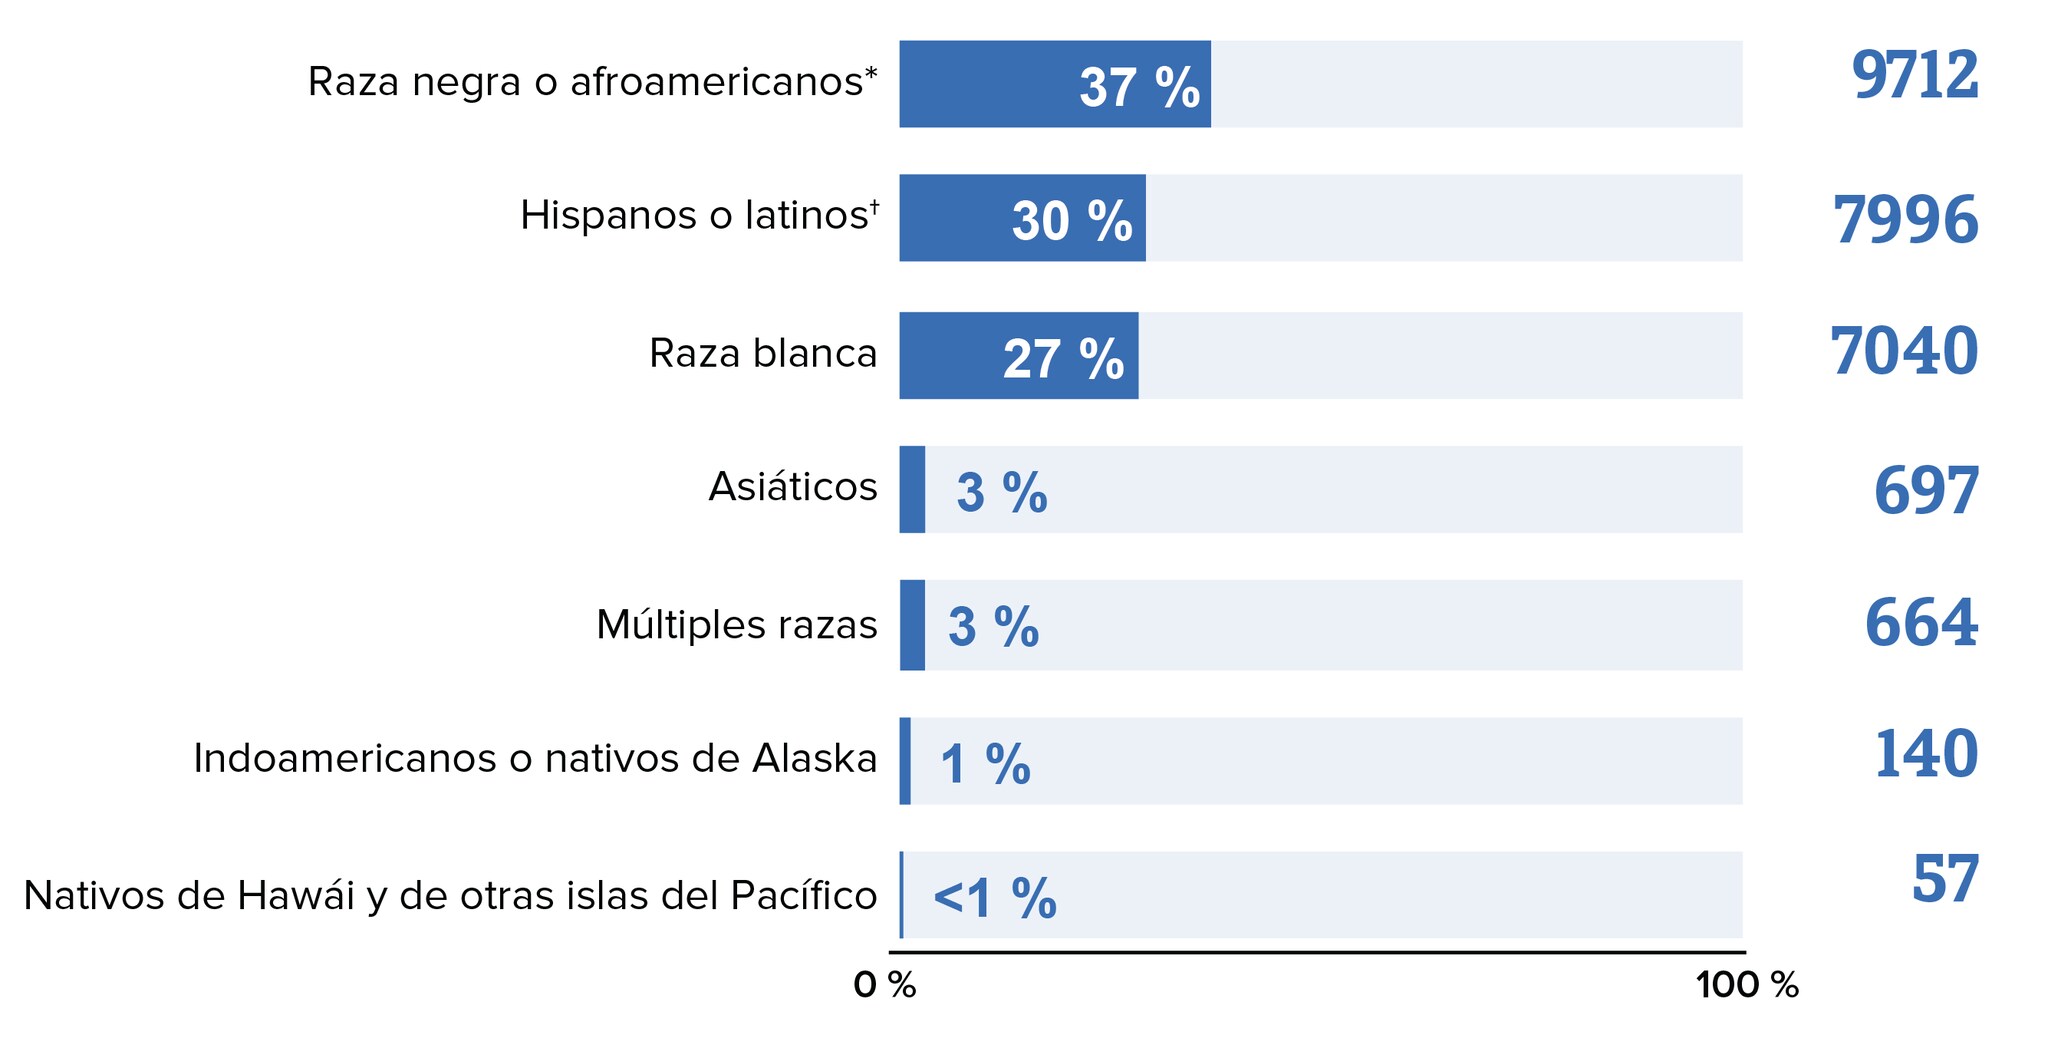 Este gráfico de barras muestra la cantidad de diagnósticos de infección por el VIH entre los hombres gais y bisexuales en los Estados Unidos y áreas dependientes en el 2018. Los hombres gais y bisexuales de raza negra o afroamericanos conformaron el 37 % de los diagnósticos nuevos de infección por el VIH; los hombres gais y bisexuales hispanos o latinos, el 30 %; los hombres gais y bisexuales de raza blanca, el 27 %; los hombres gais y bisexuales asiáticos, el 3 %; los hombres gais y bisexuales de múltiples razas, el 3 %; los hombres gais y bisexuales indoamericanos o nativos de Alaska, el 1 %; y los hombres gais y bisexuales nativos de Hawái y de otras islas del Pacífico, menos del 1 % de los diagnósticos nuevos.